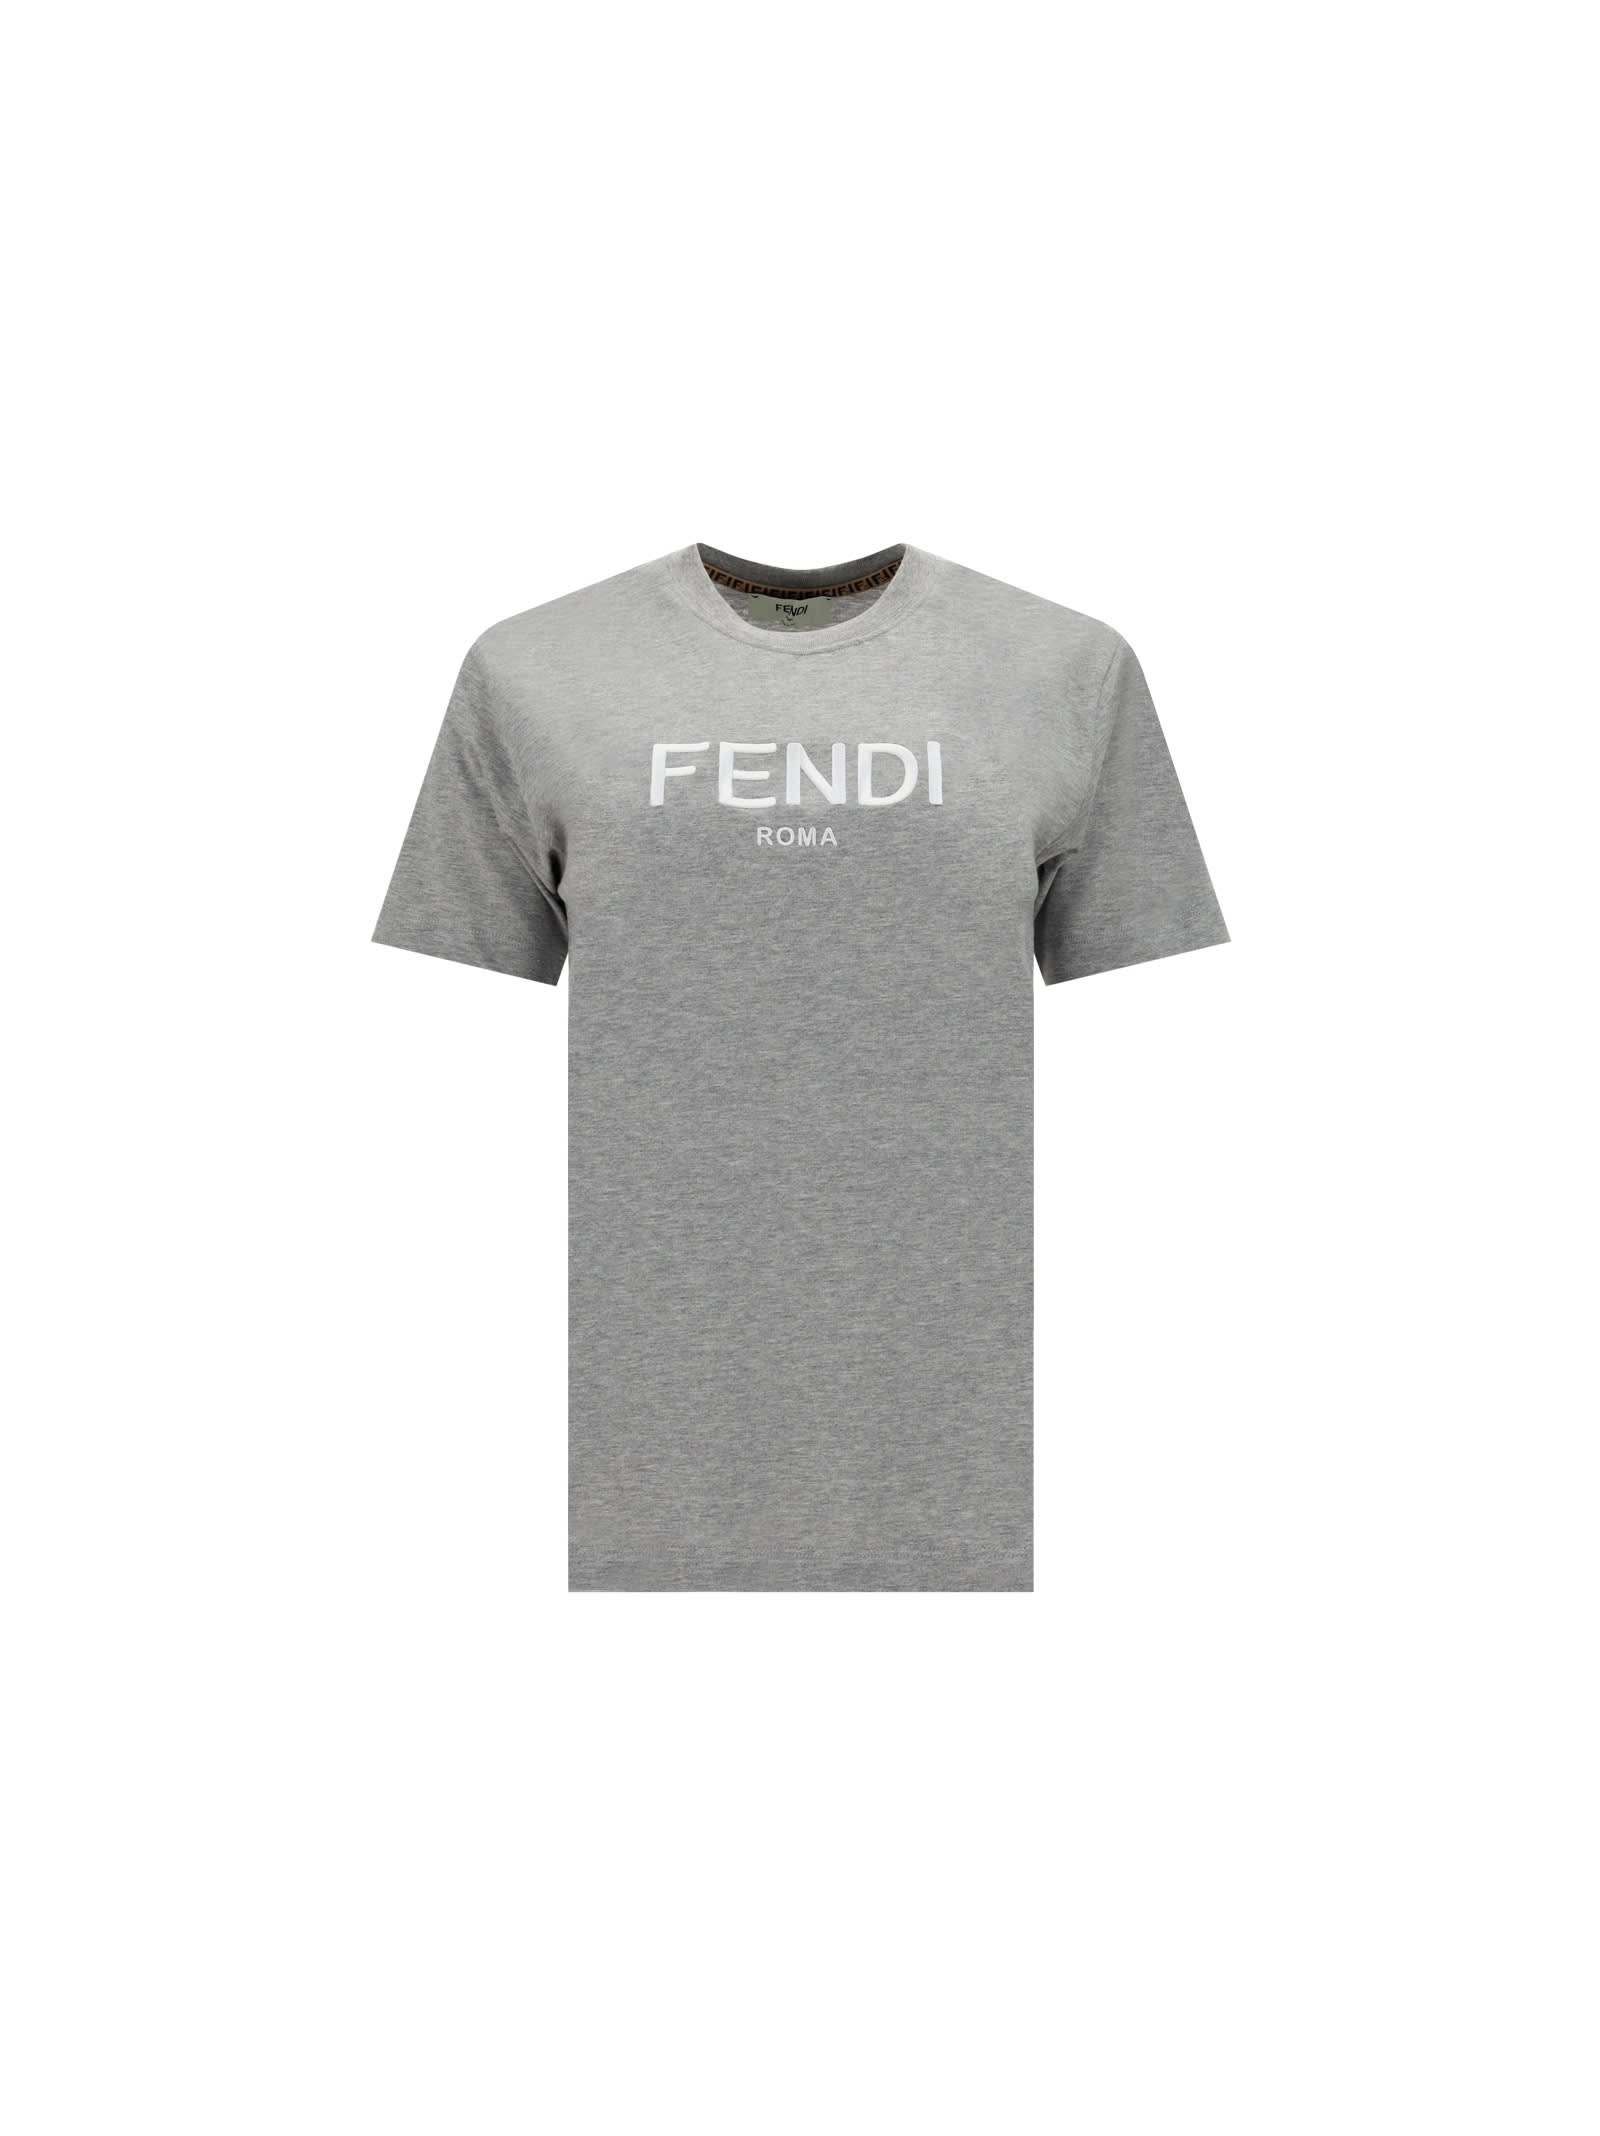 FENDI FENDI